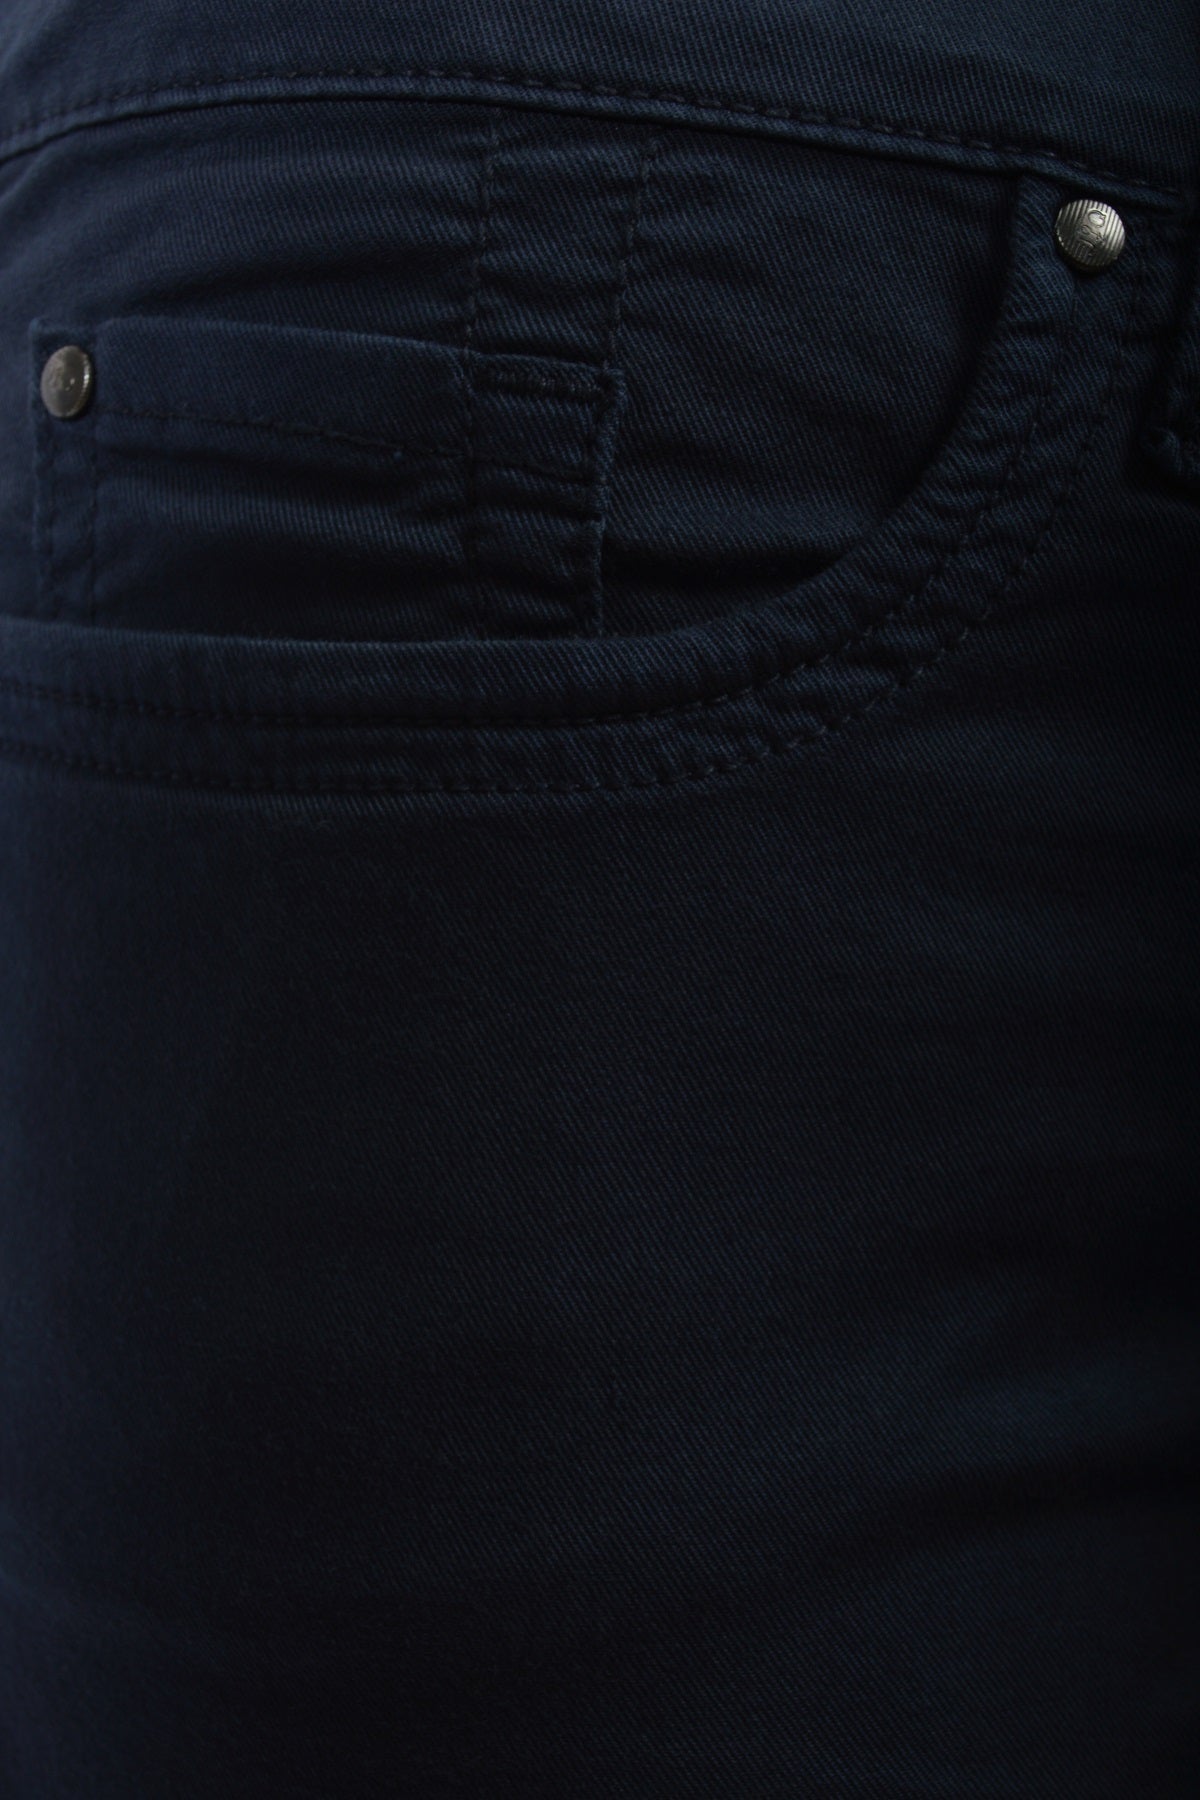 Jonny Q jeans P1161AC, Jacky x-fit twill, Night Blue